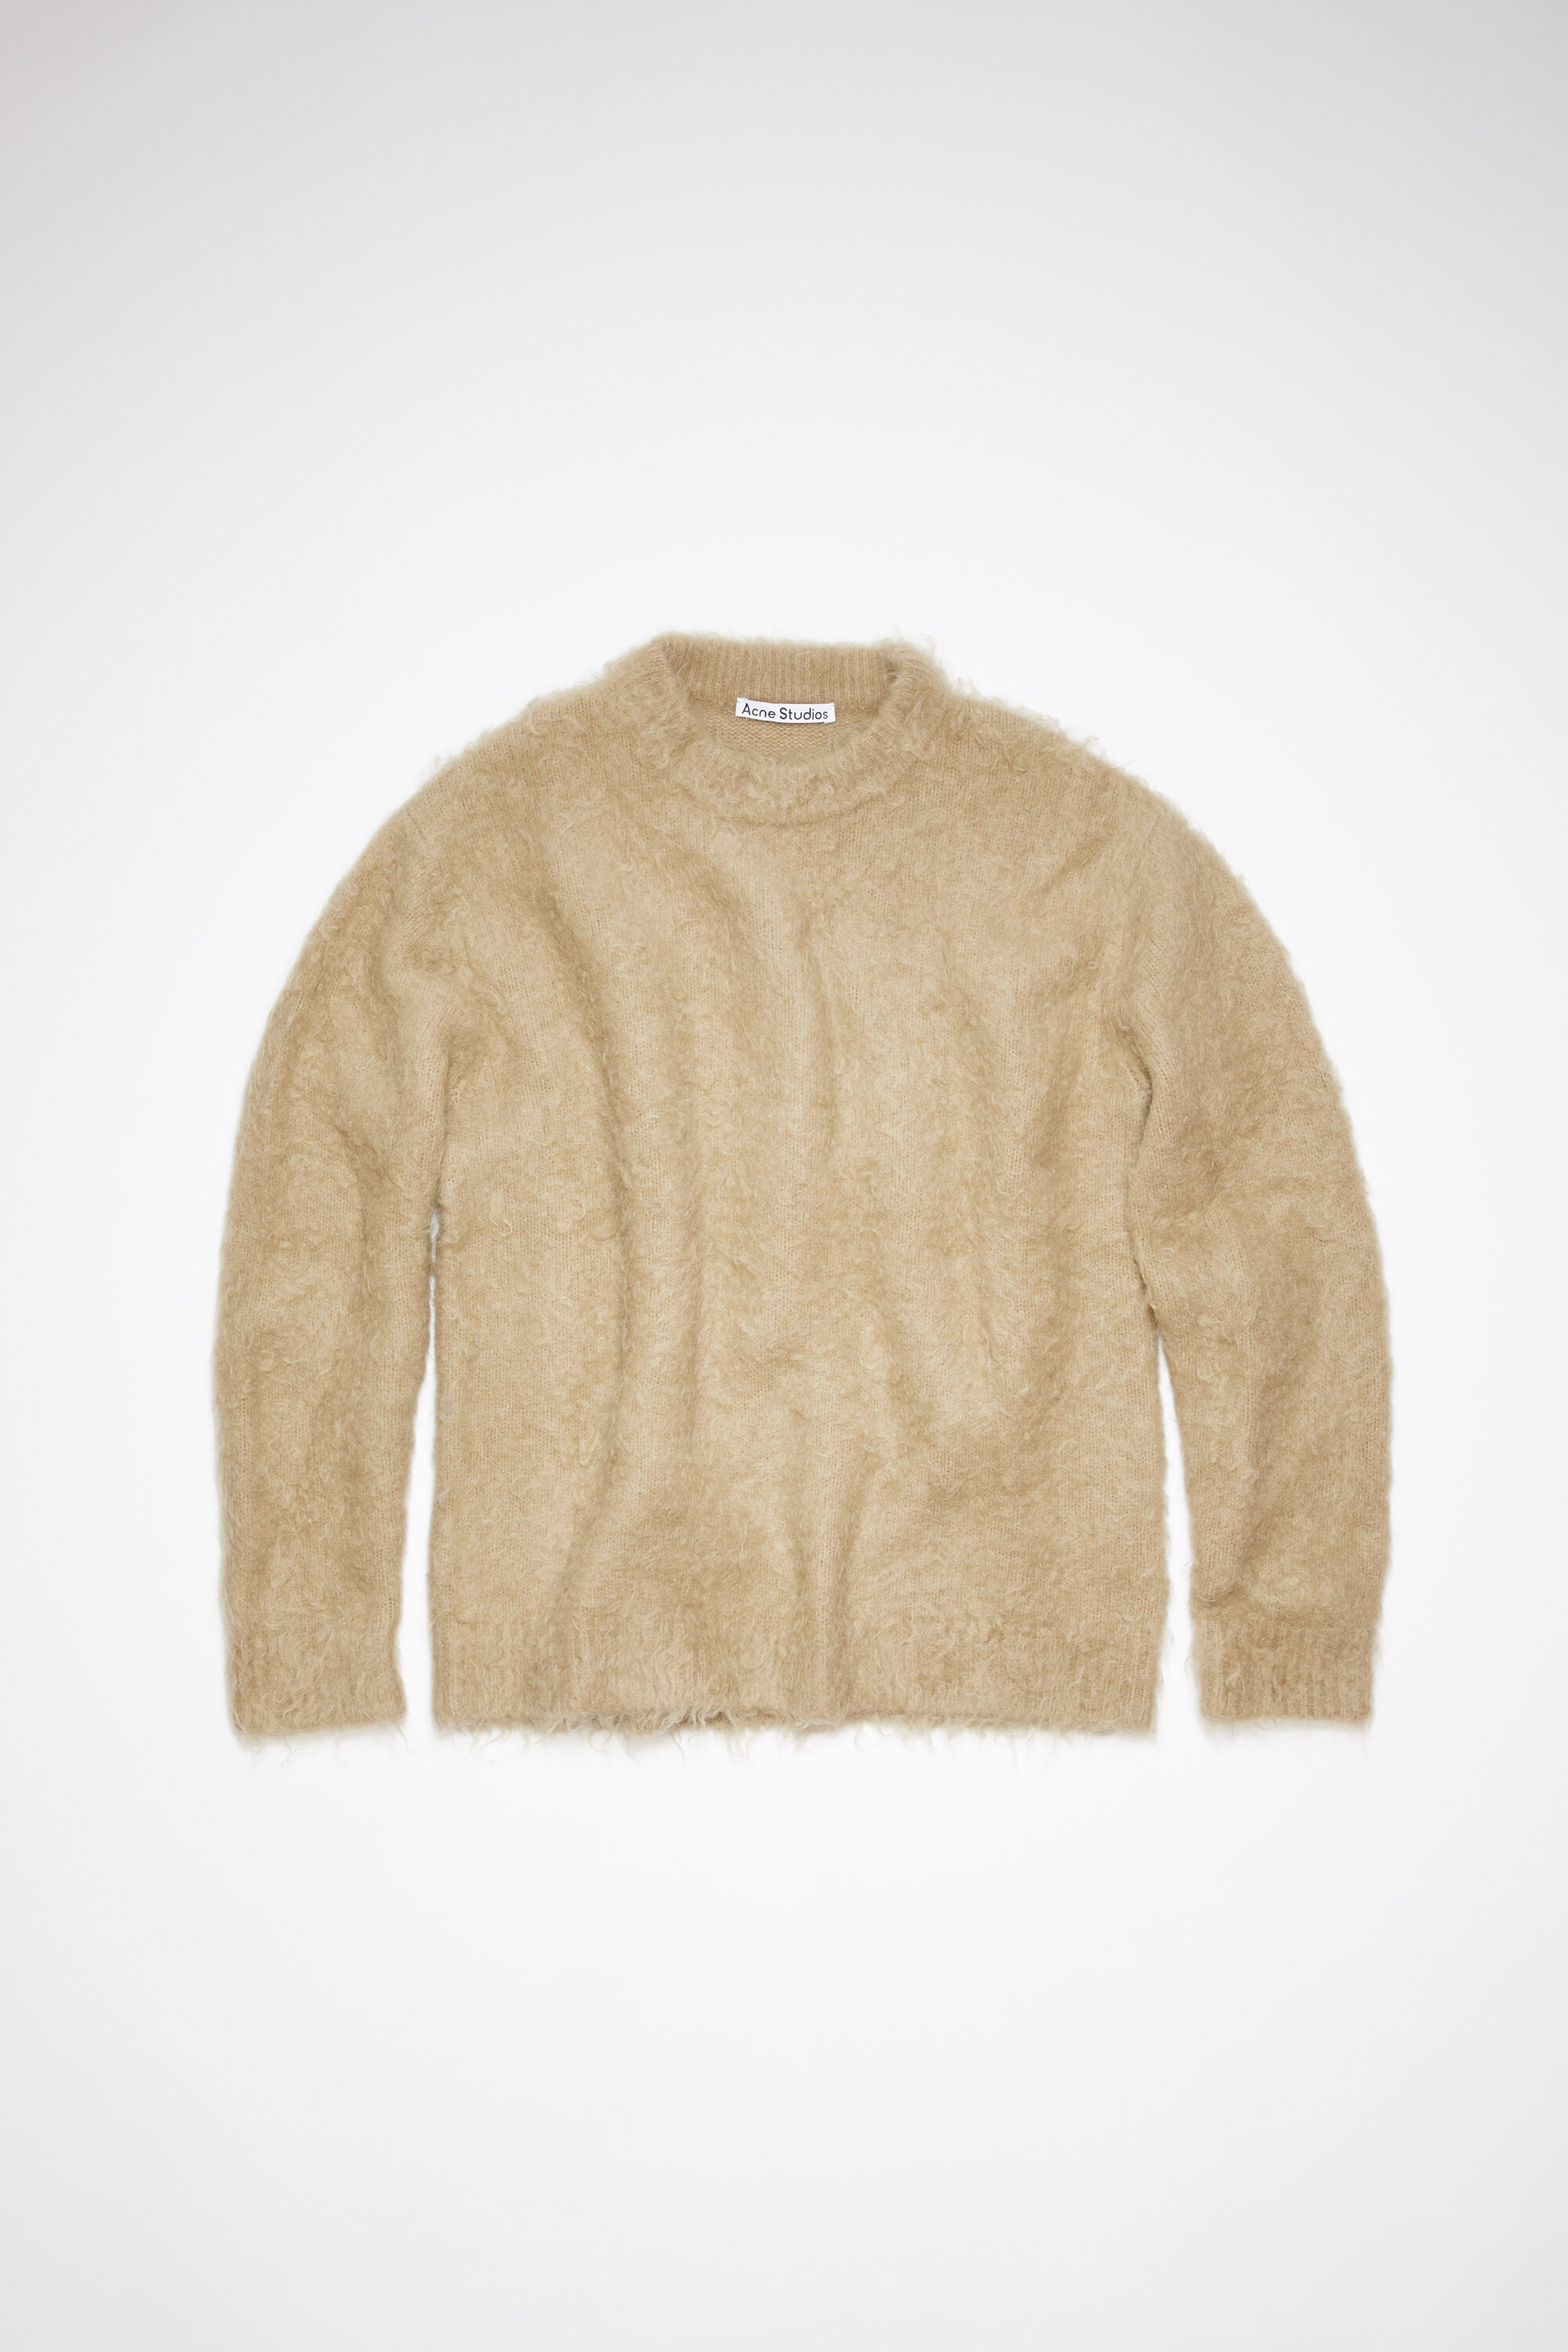 Acne Studios - Mohair wool jumper - Dark beige